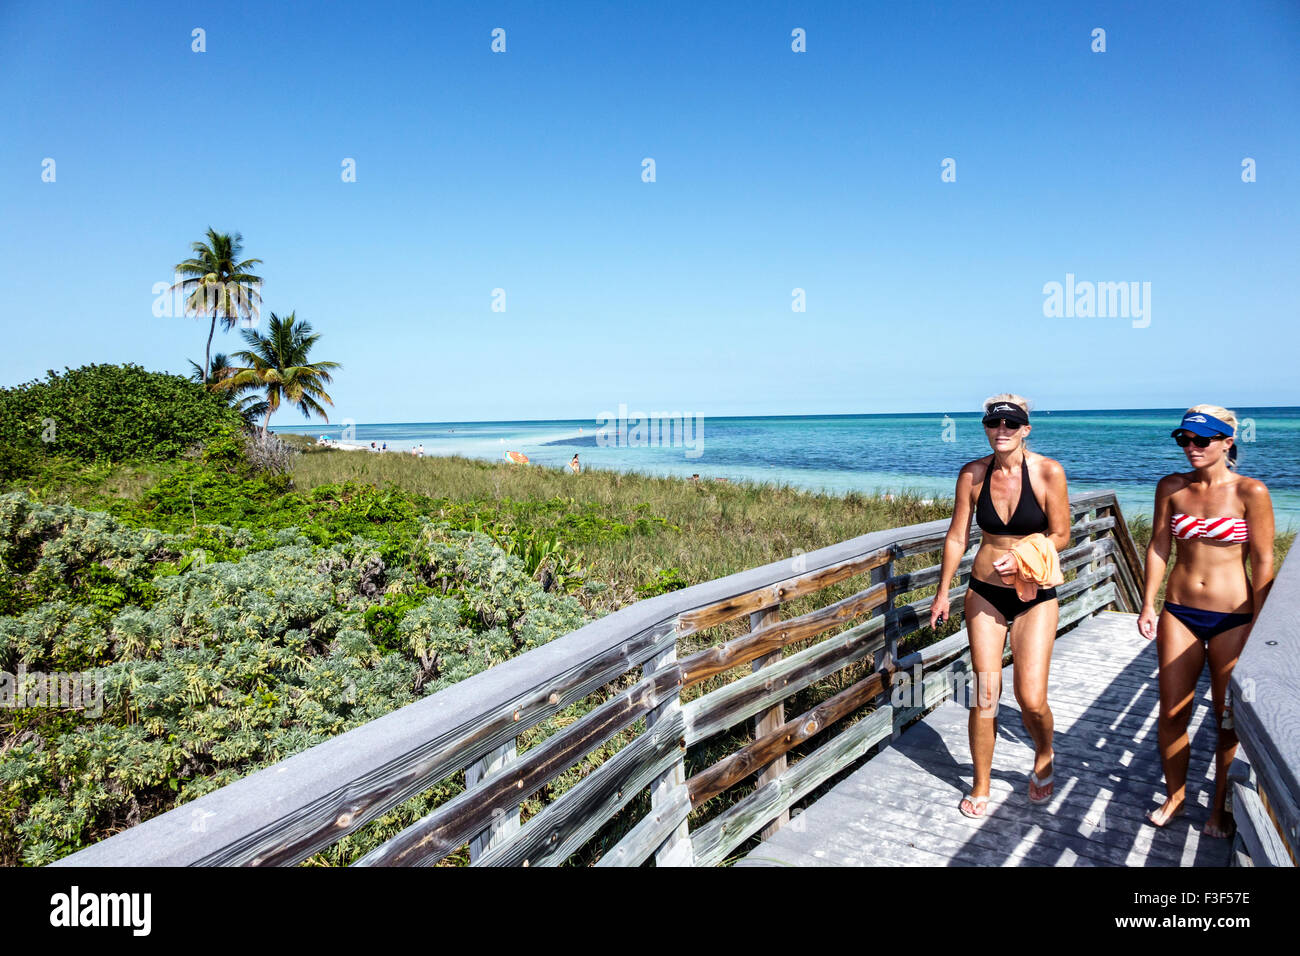 Florida Keys, Big Pine Key, Bahia Honda State Park, océan Atlantique, plage, bains de soleil, promenade, femme femme femme femmes, amis, mère, fille, FL150508045 Banque D'Images